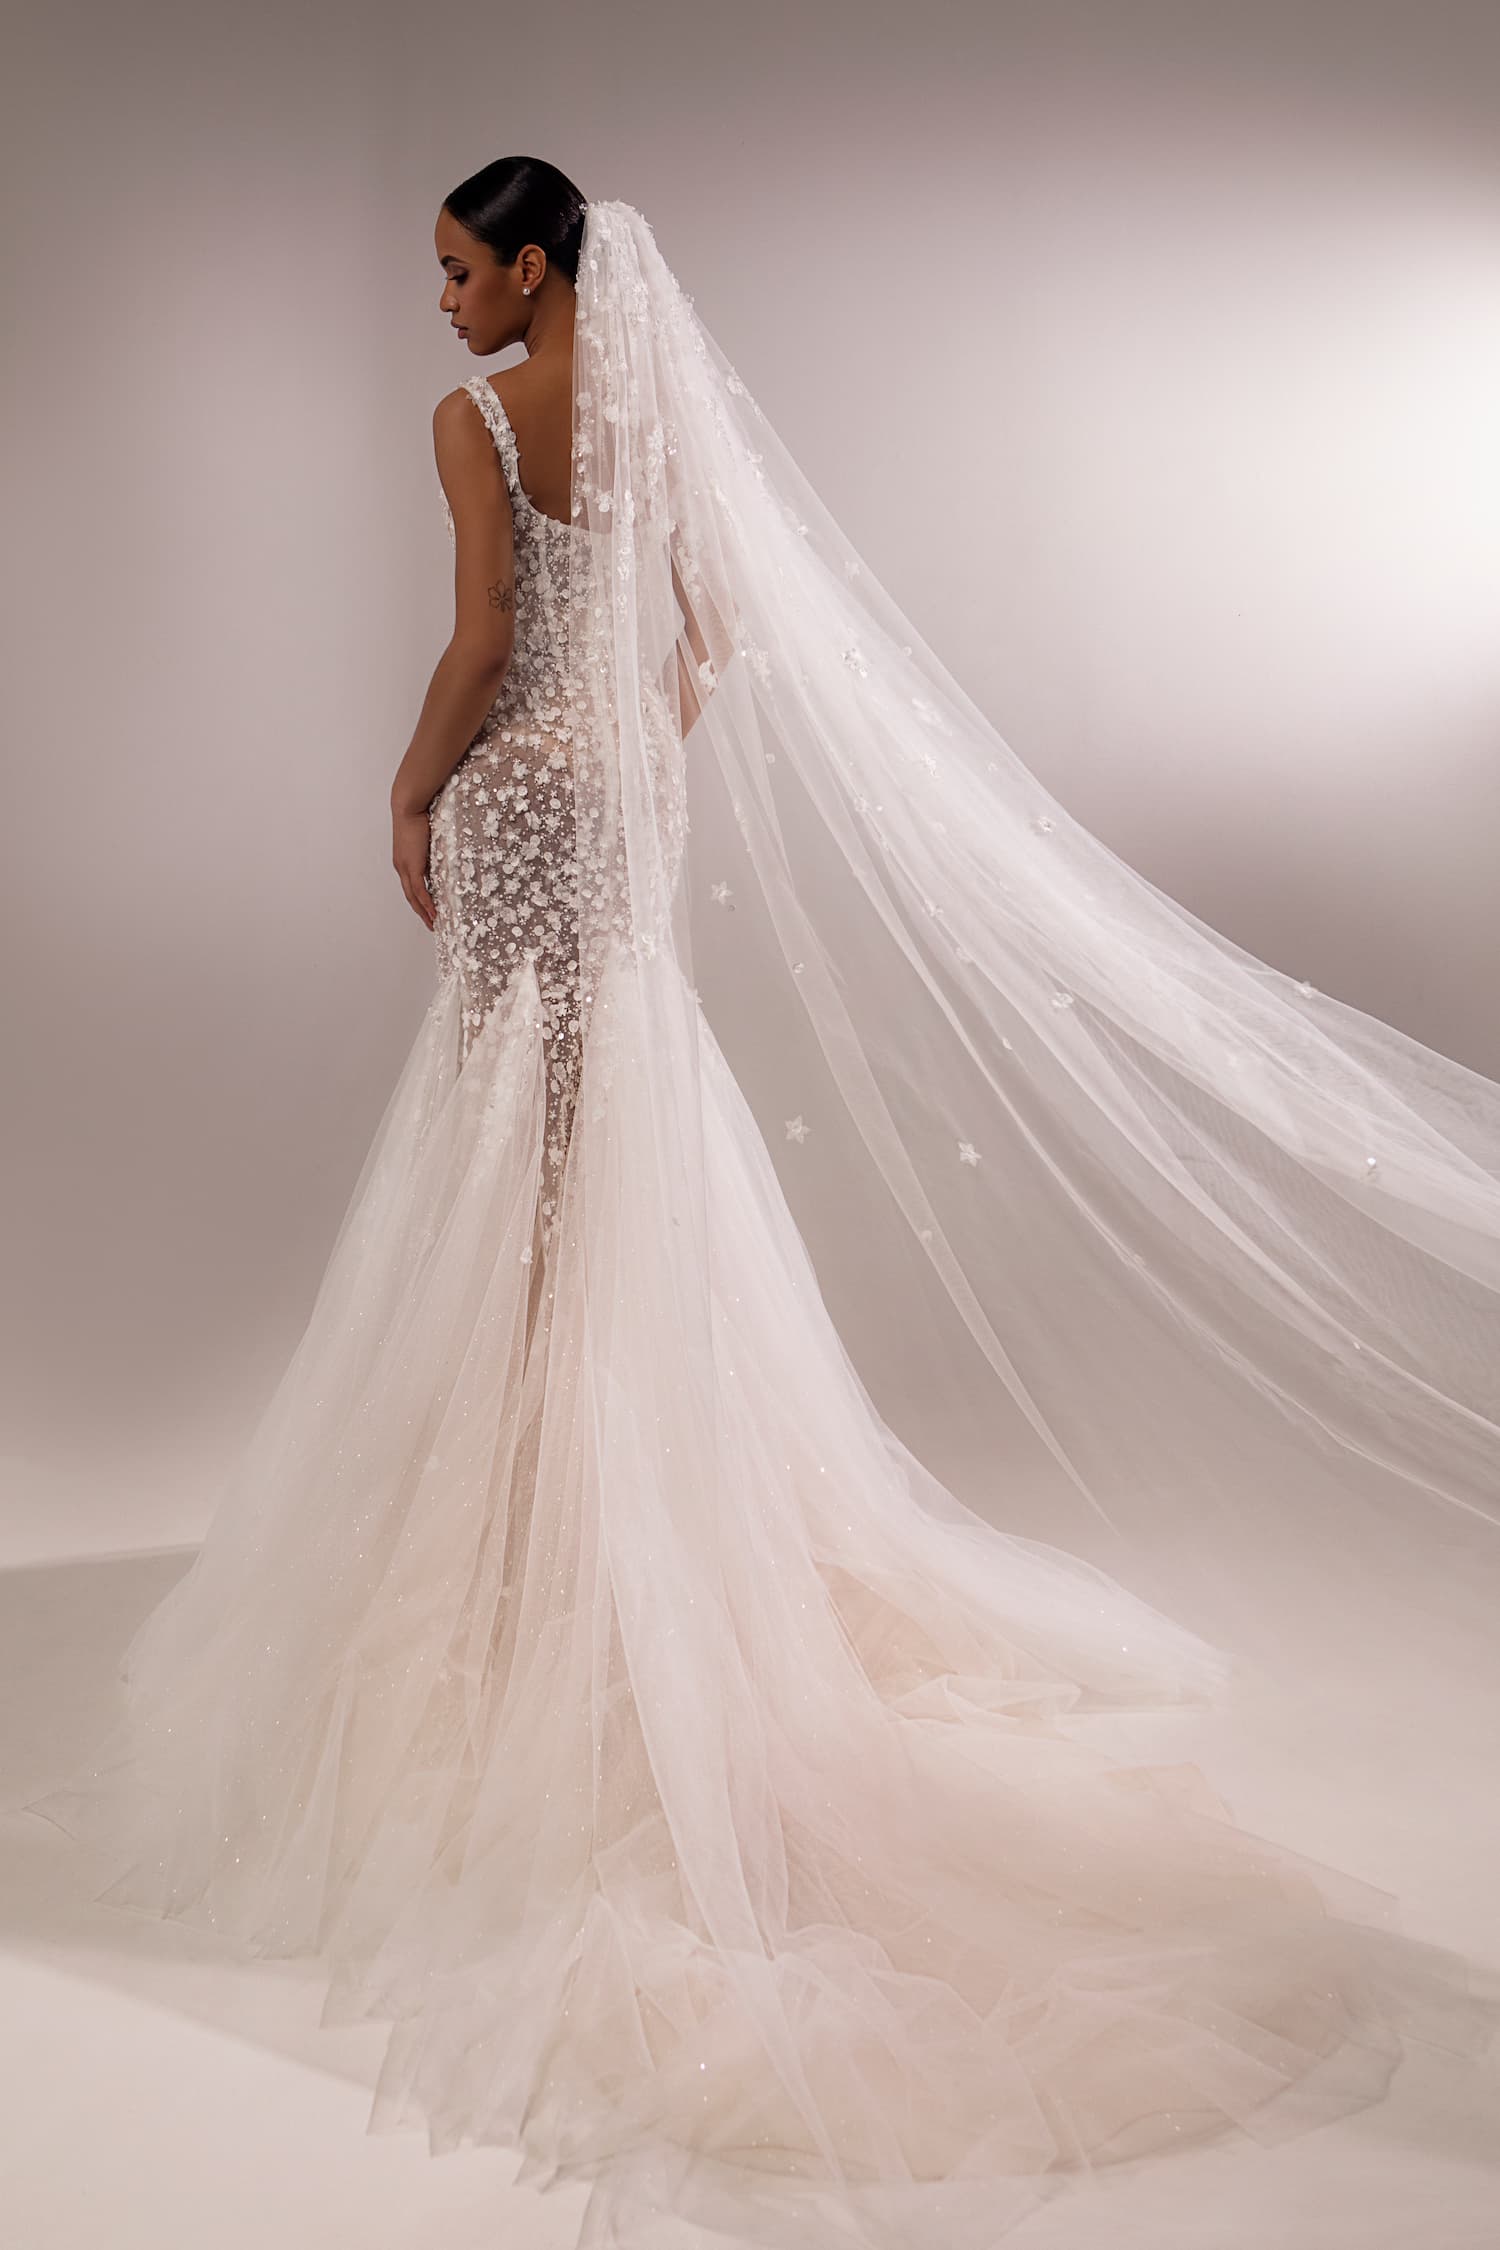 Mermaid silhouette lace wedding dress by Oksana Mukha. 2